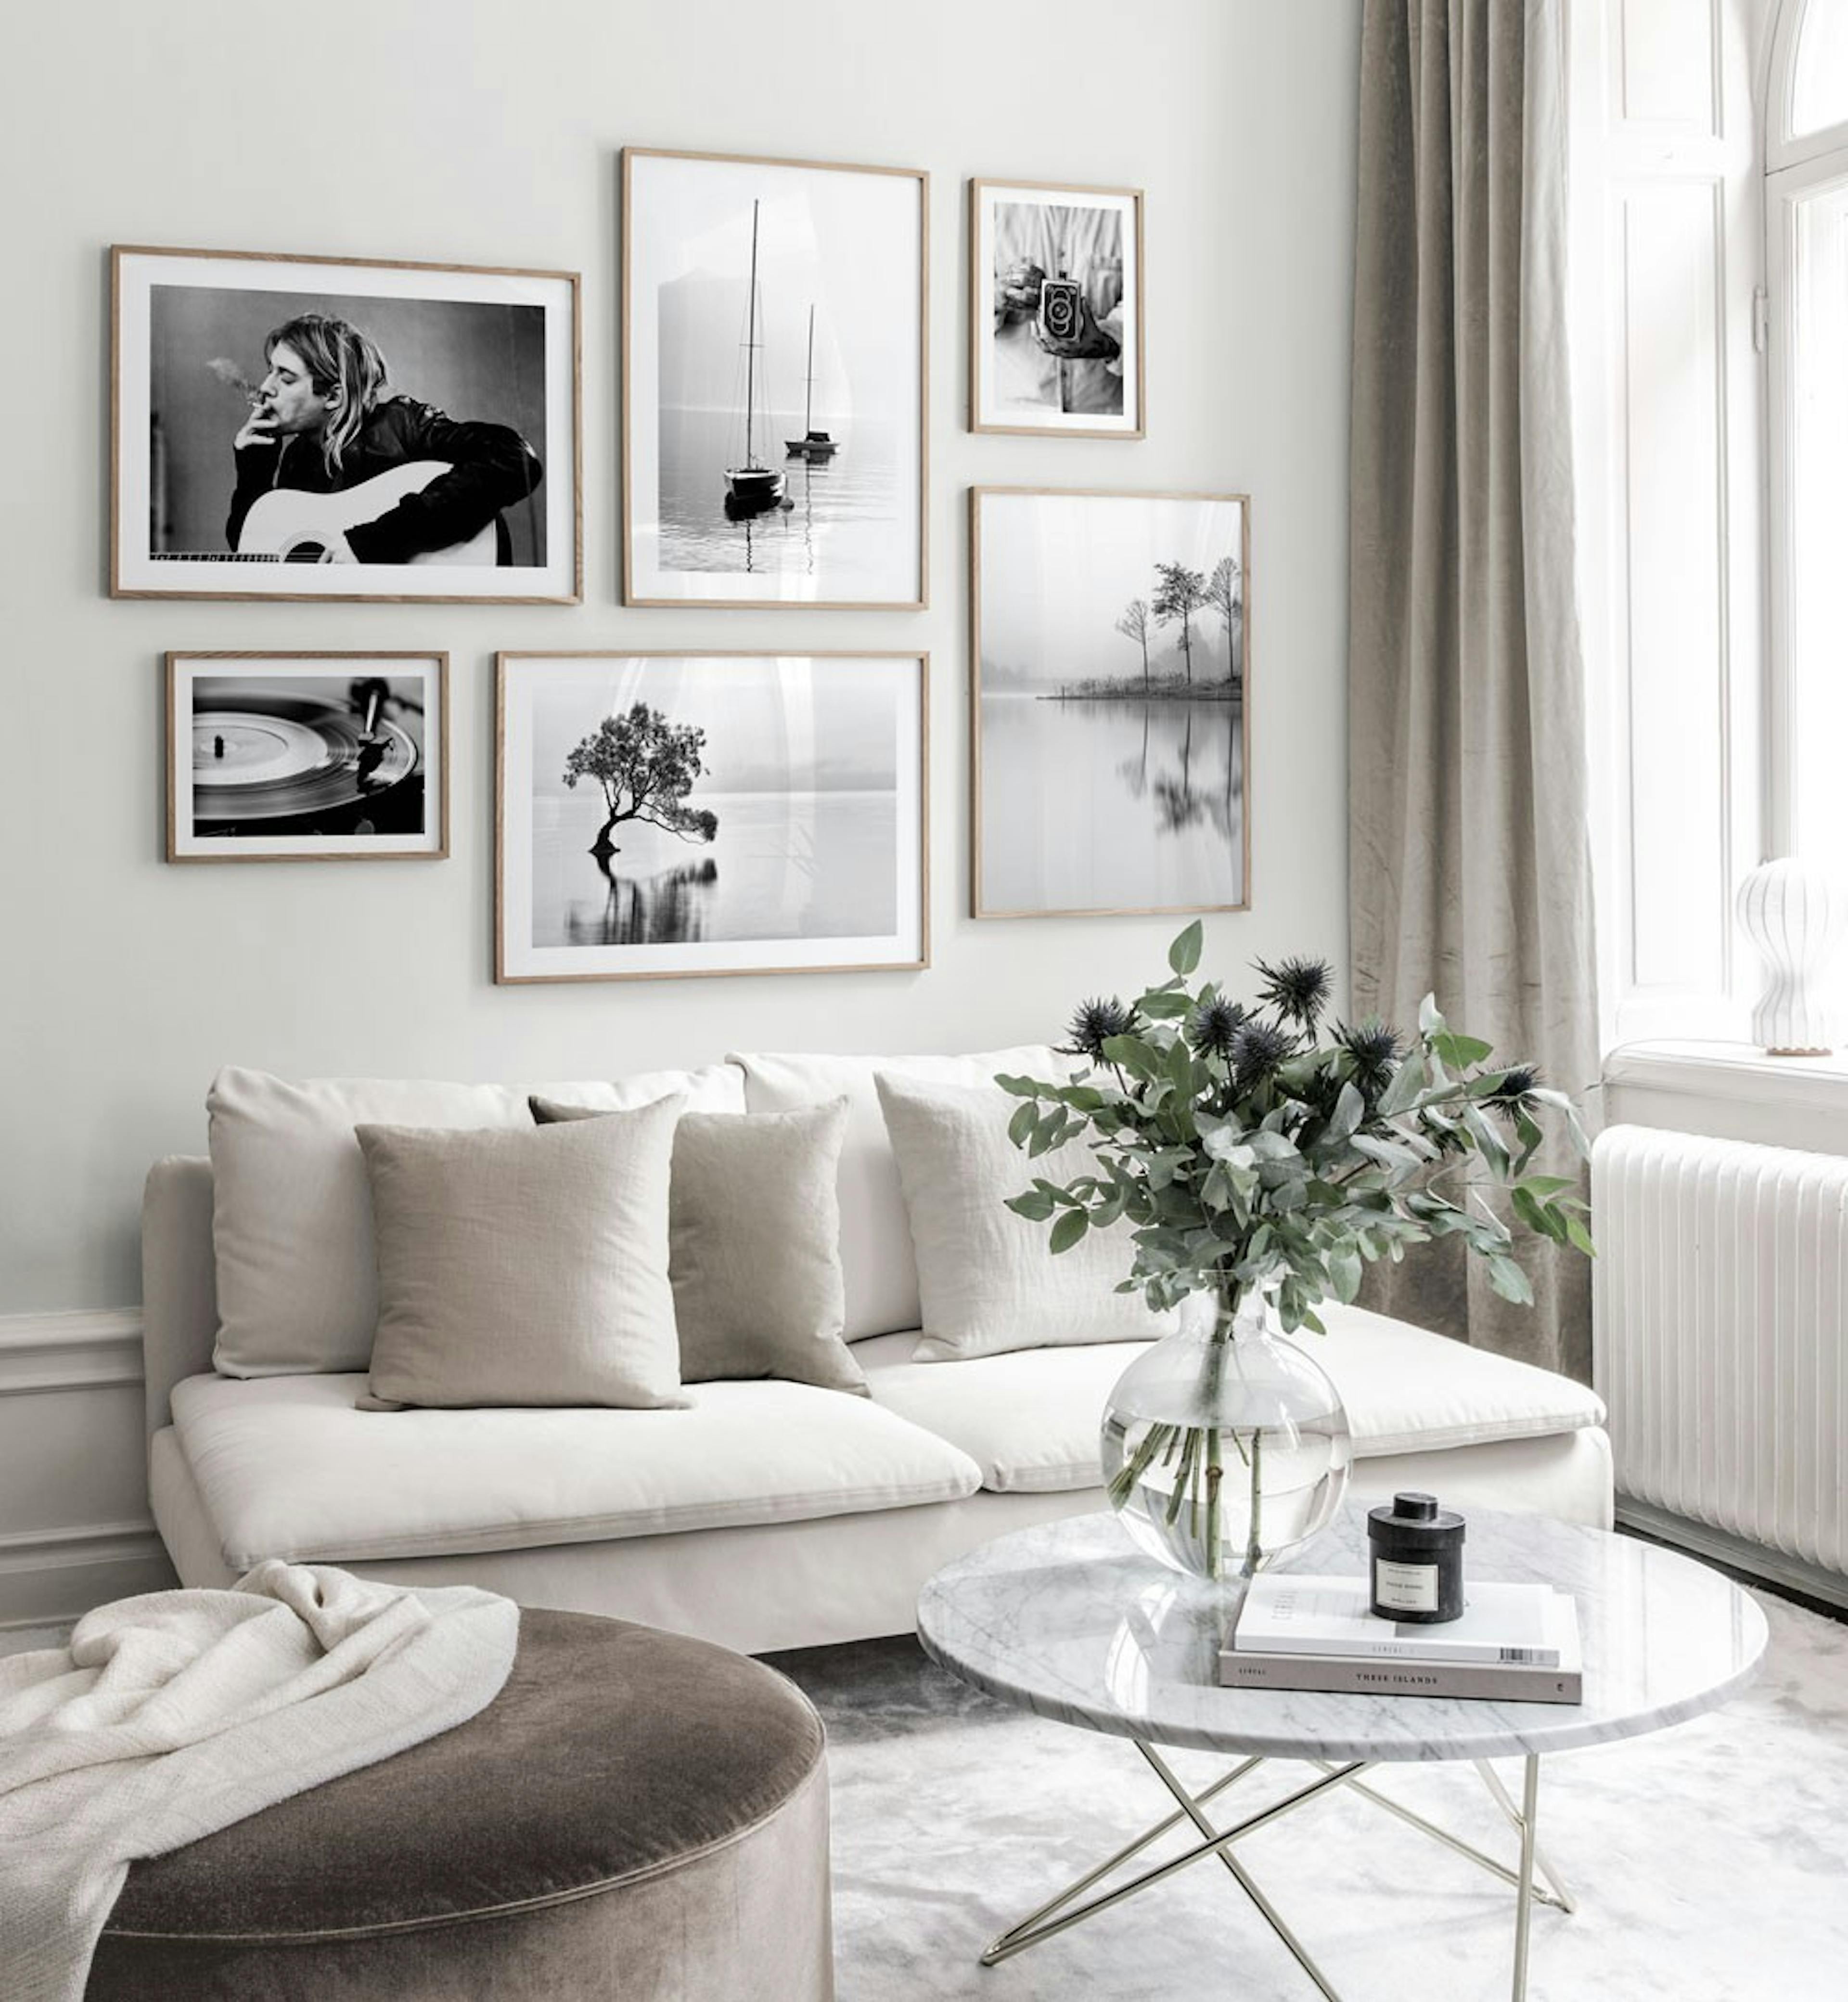 Galériafal skandináv dizájnban fekete-fehér poszterekkel